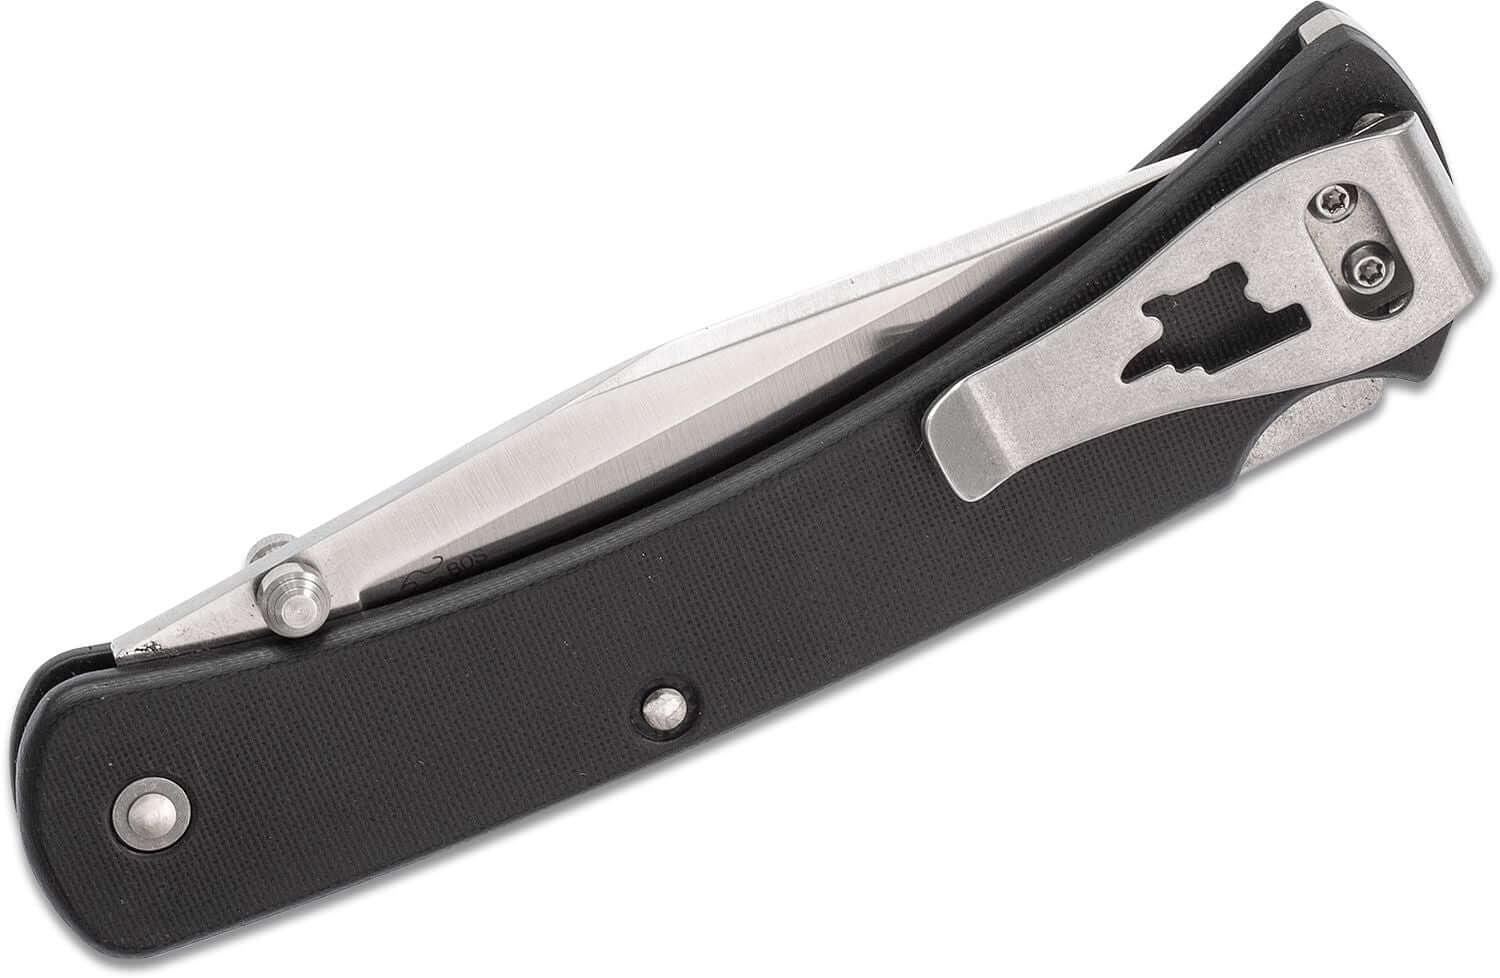 Buck 110 Slim Pro Lockback Black G10 CPM S30V - Knives.mx